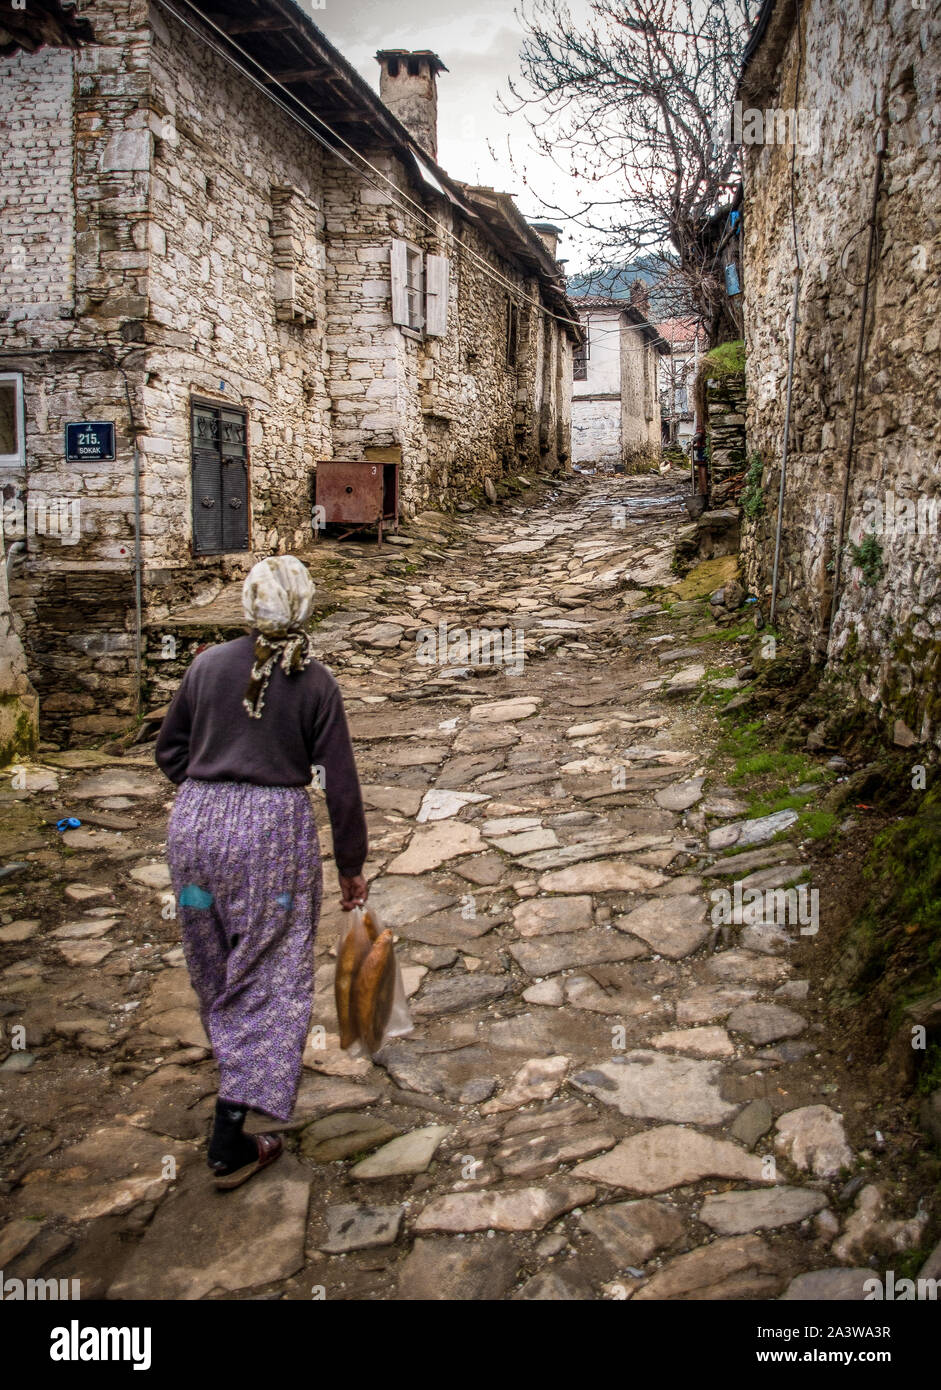 Sirince, Turkish village Stock Photo